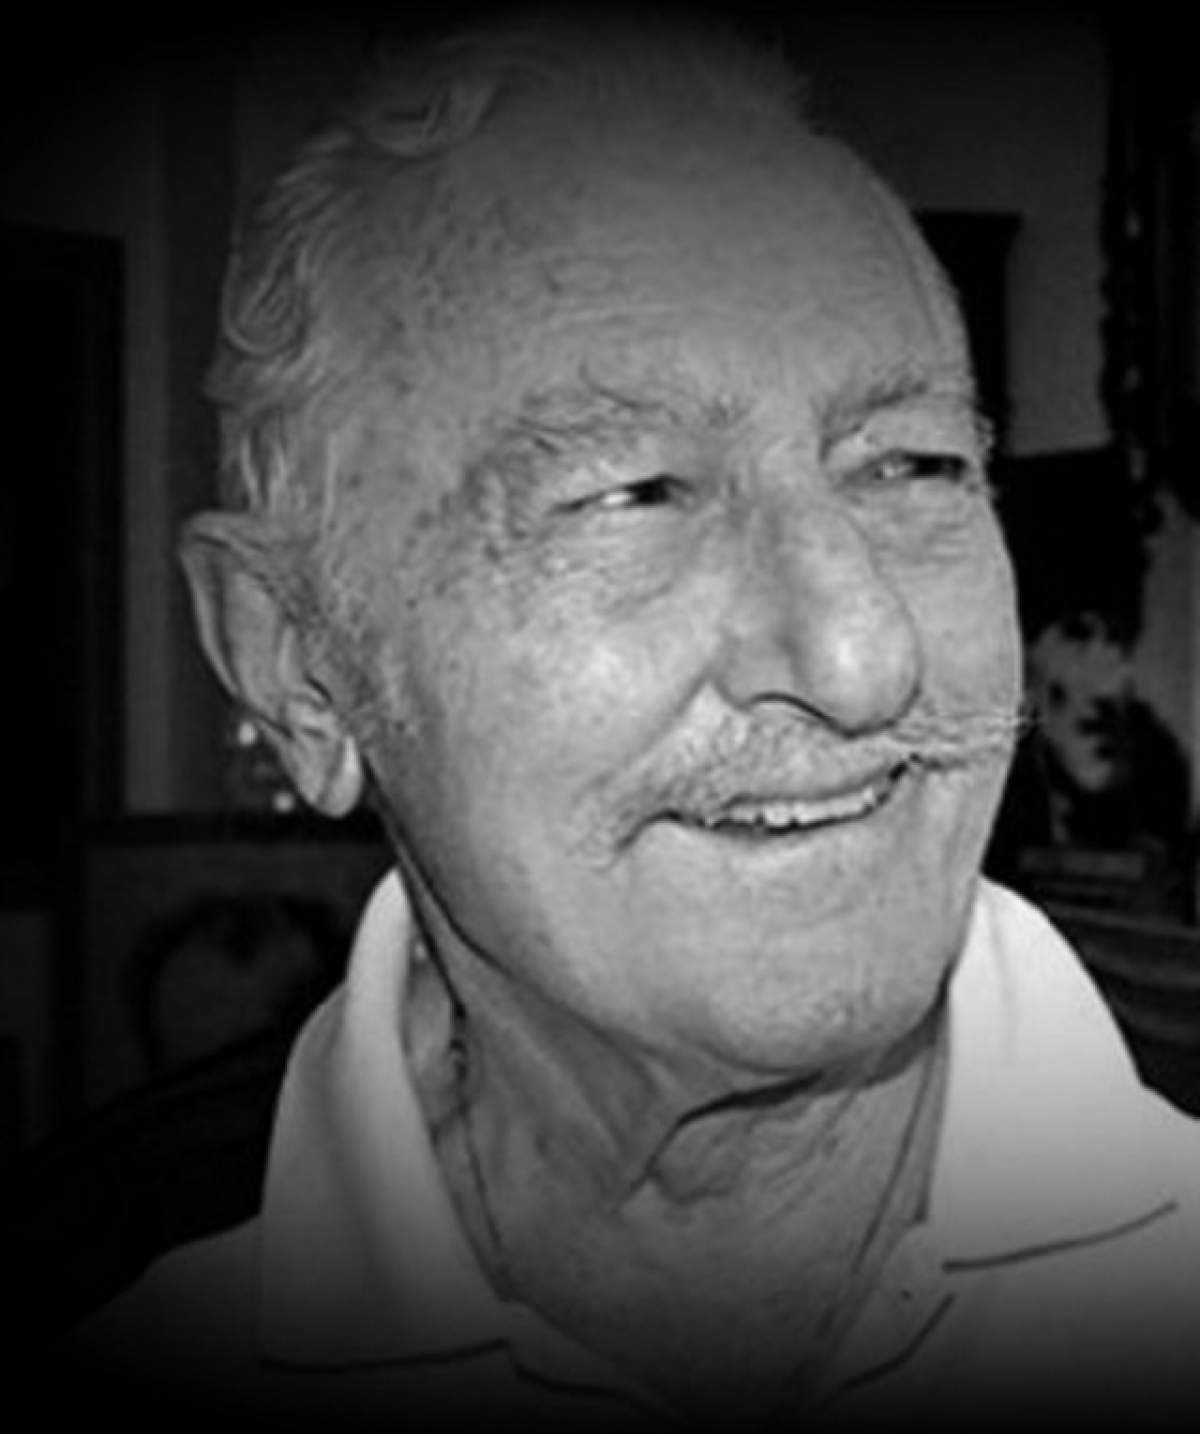 A murit Suleyman Seba, o figură legendară a fotbalului din Turcia!